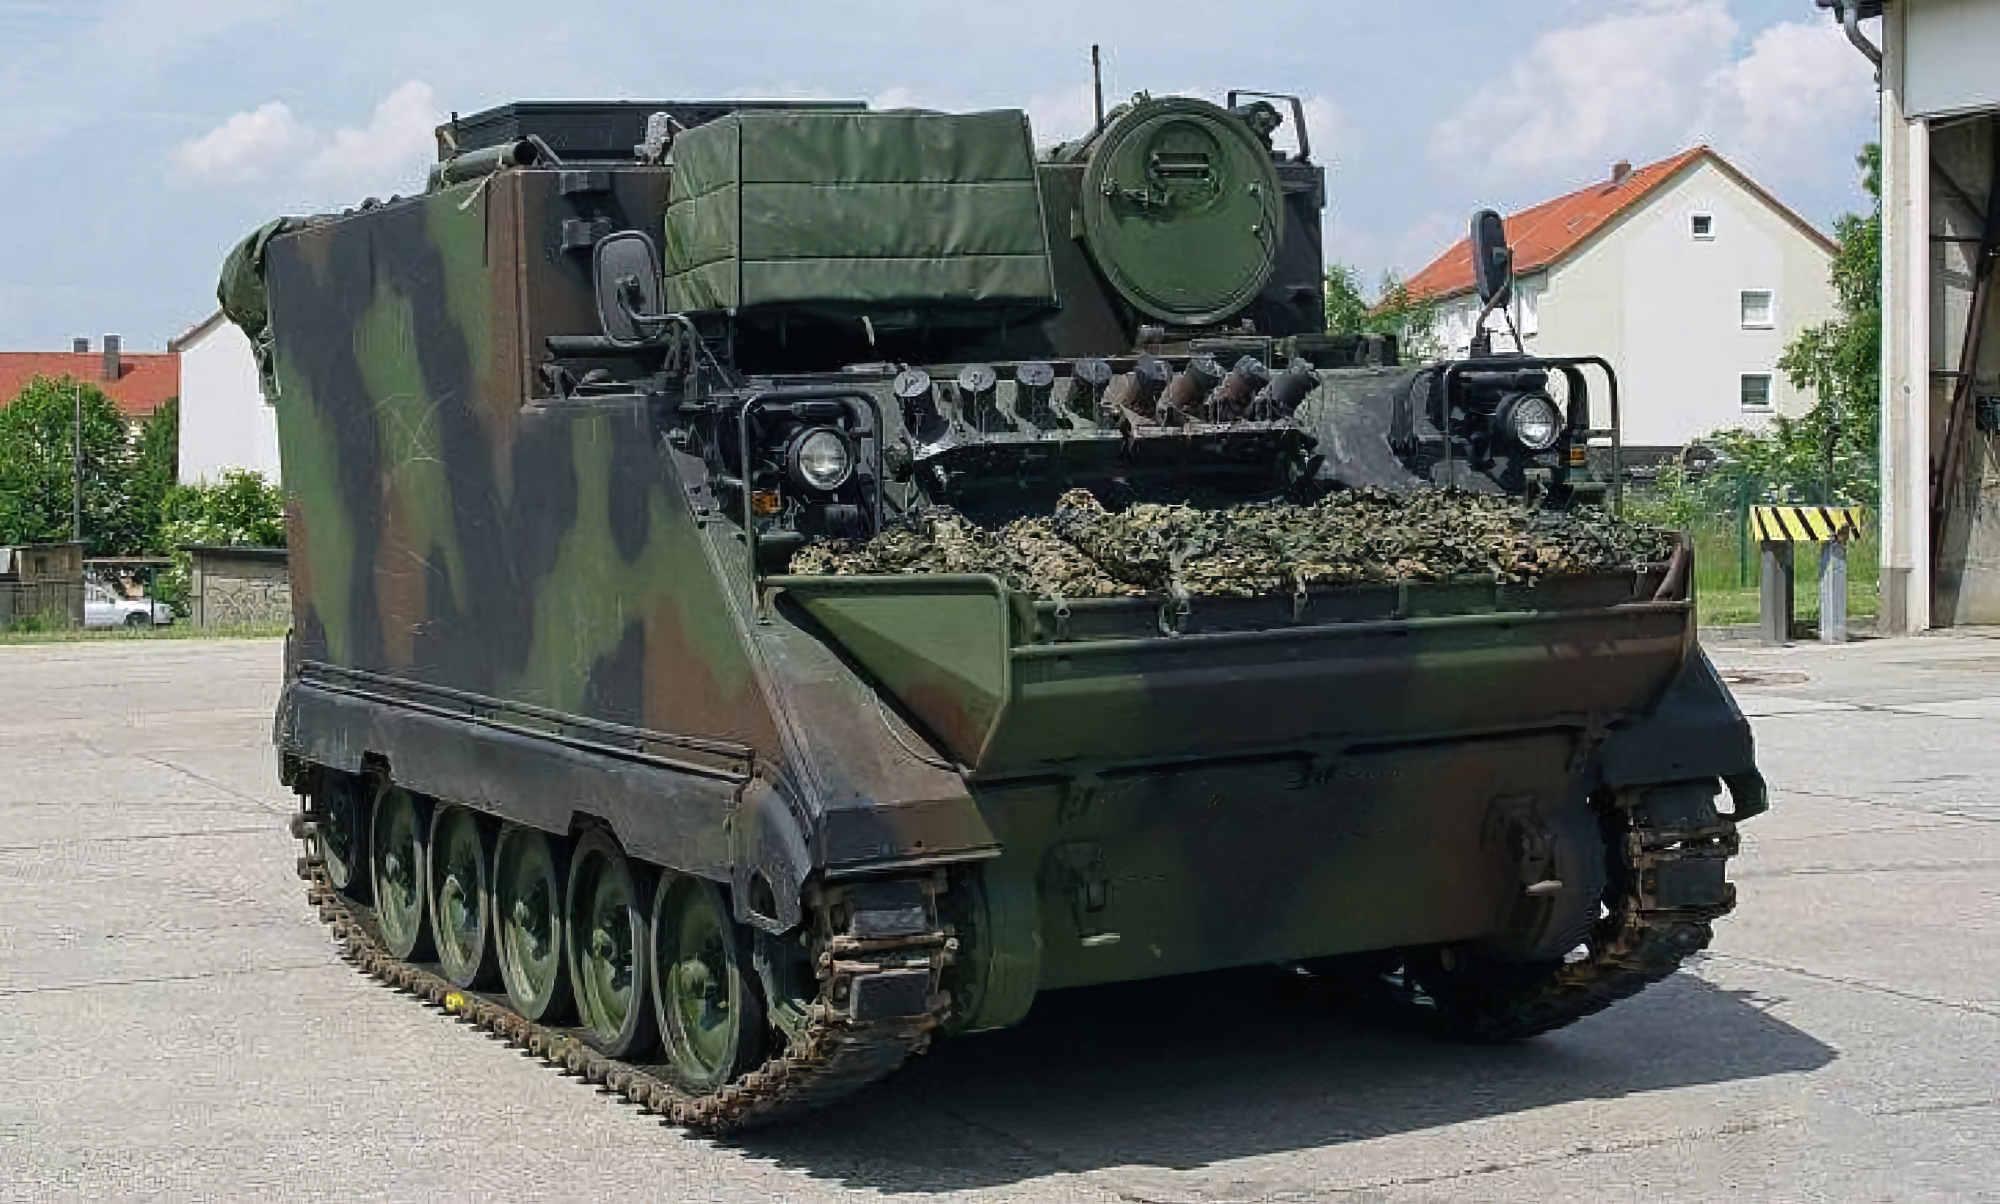 AFU otrzymało od Litwy nową partię pojazdów dowodzenia i sztabu M577 opartych na transporterach opancerzonych M113